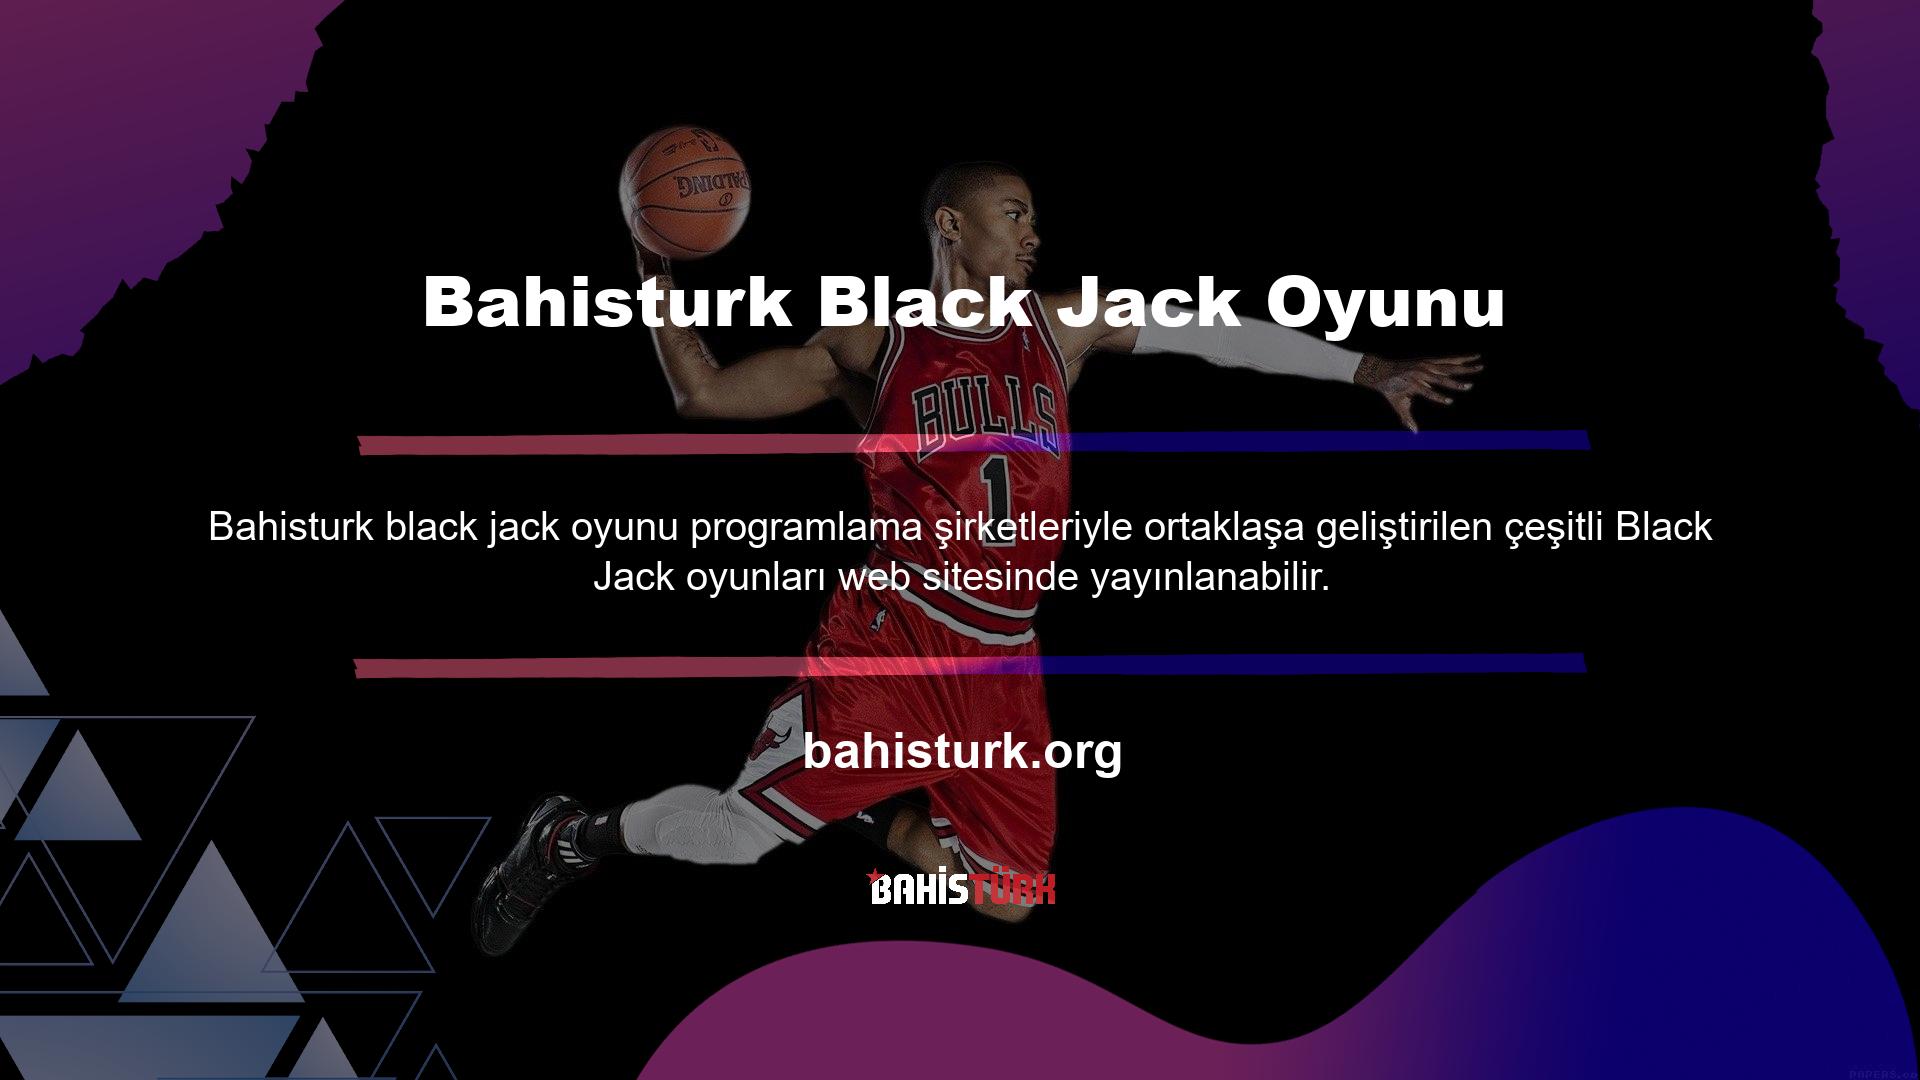 Bahisturk platformunda görülen Black Jack'in (veya basitçe Black Jack'in) altı farklı programlama şirketi tarafından oluşturulan çeşitli varyasyonları vardır